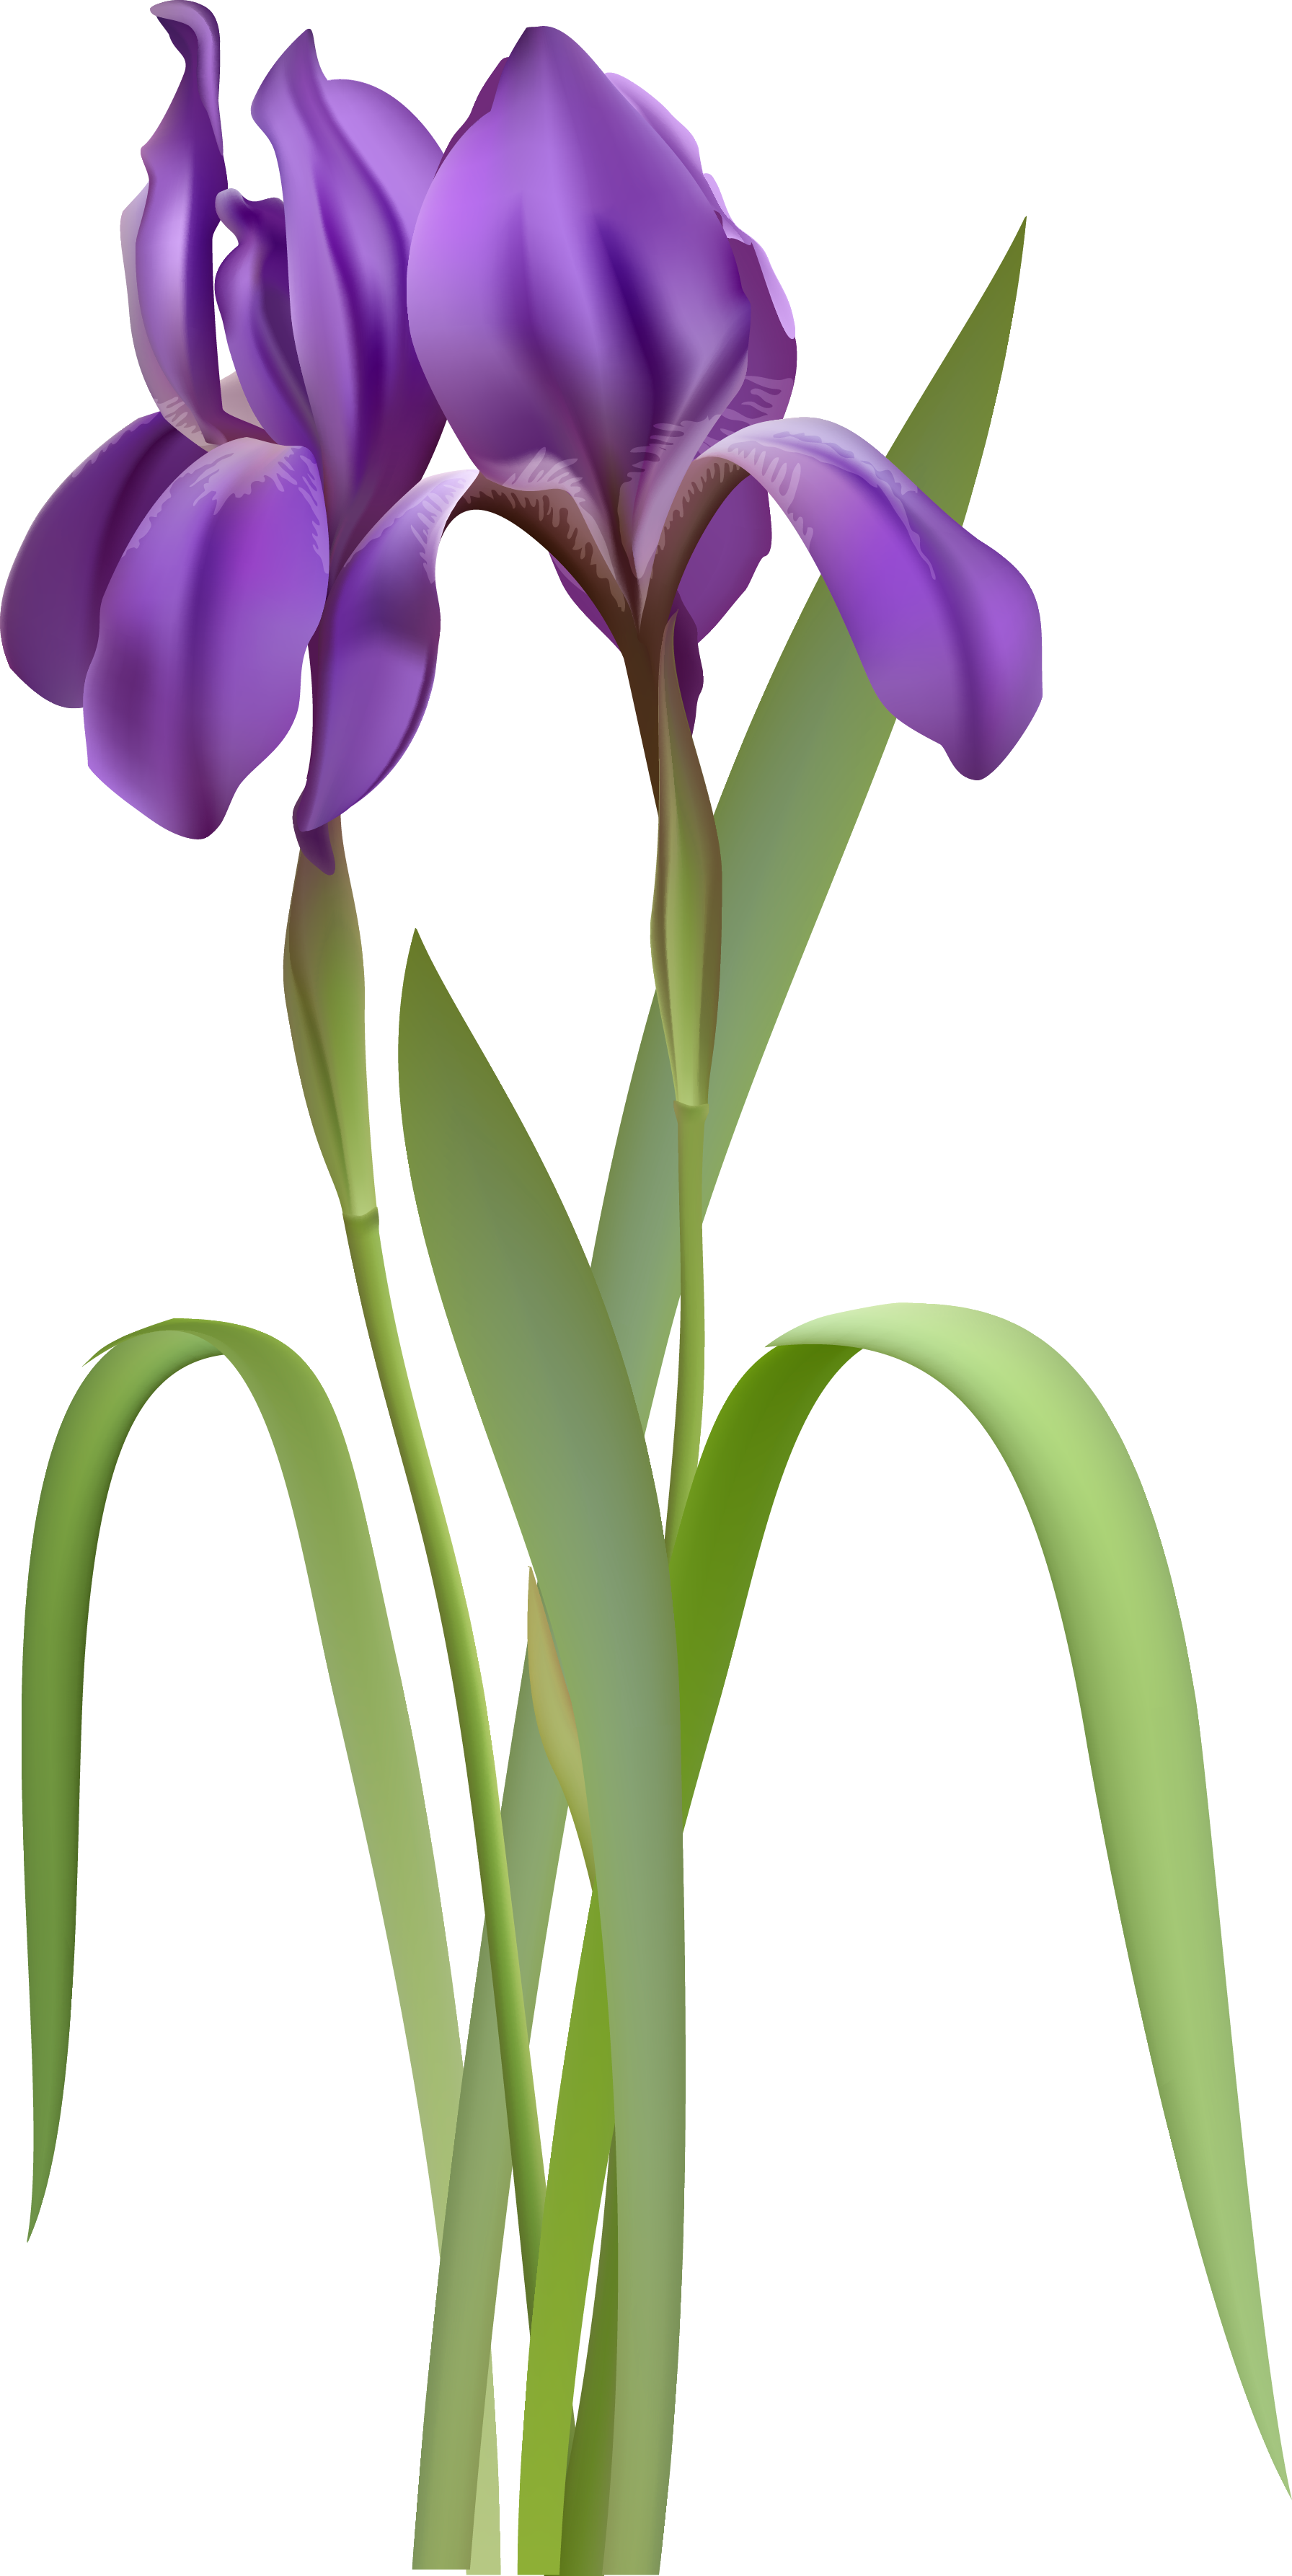 Watercolor Irises Clip Art, I